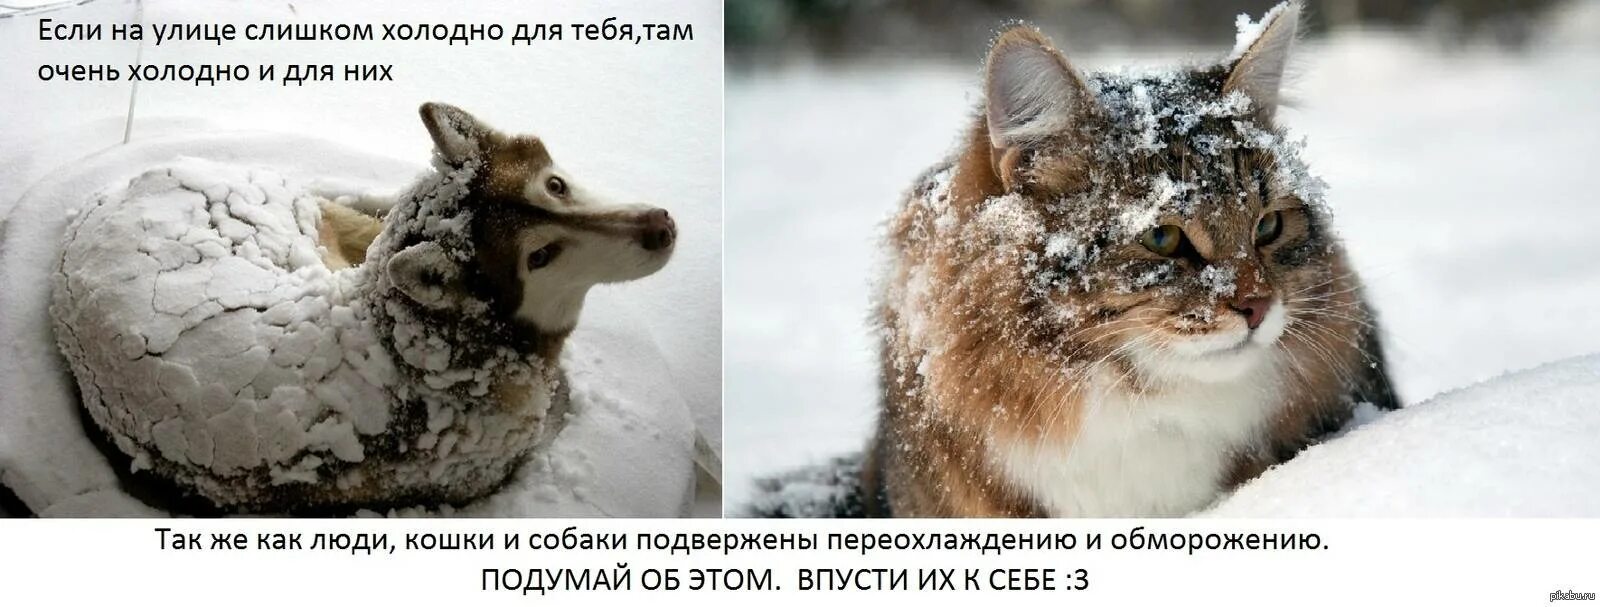 Бездомные животные зима. Замерзающие бездомные животные. Помогайте бездомным животным в Морозы. Бездомные животные мерзнут. Мороза стань сильнее